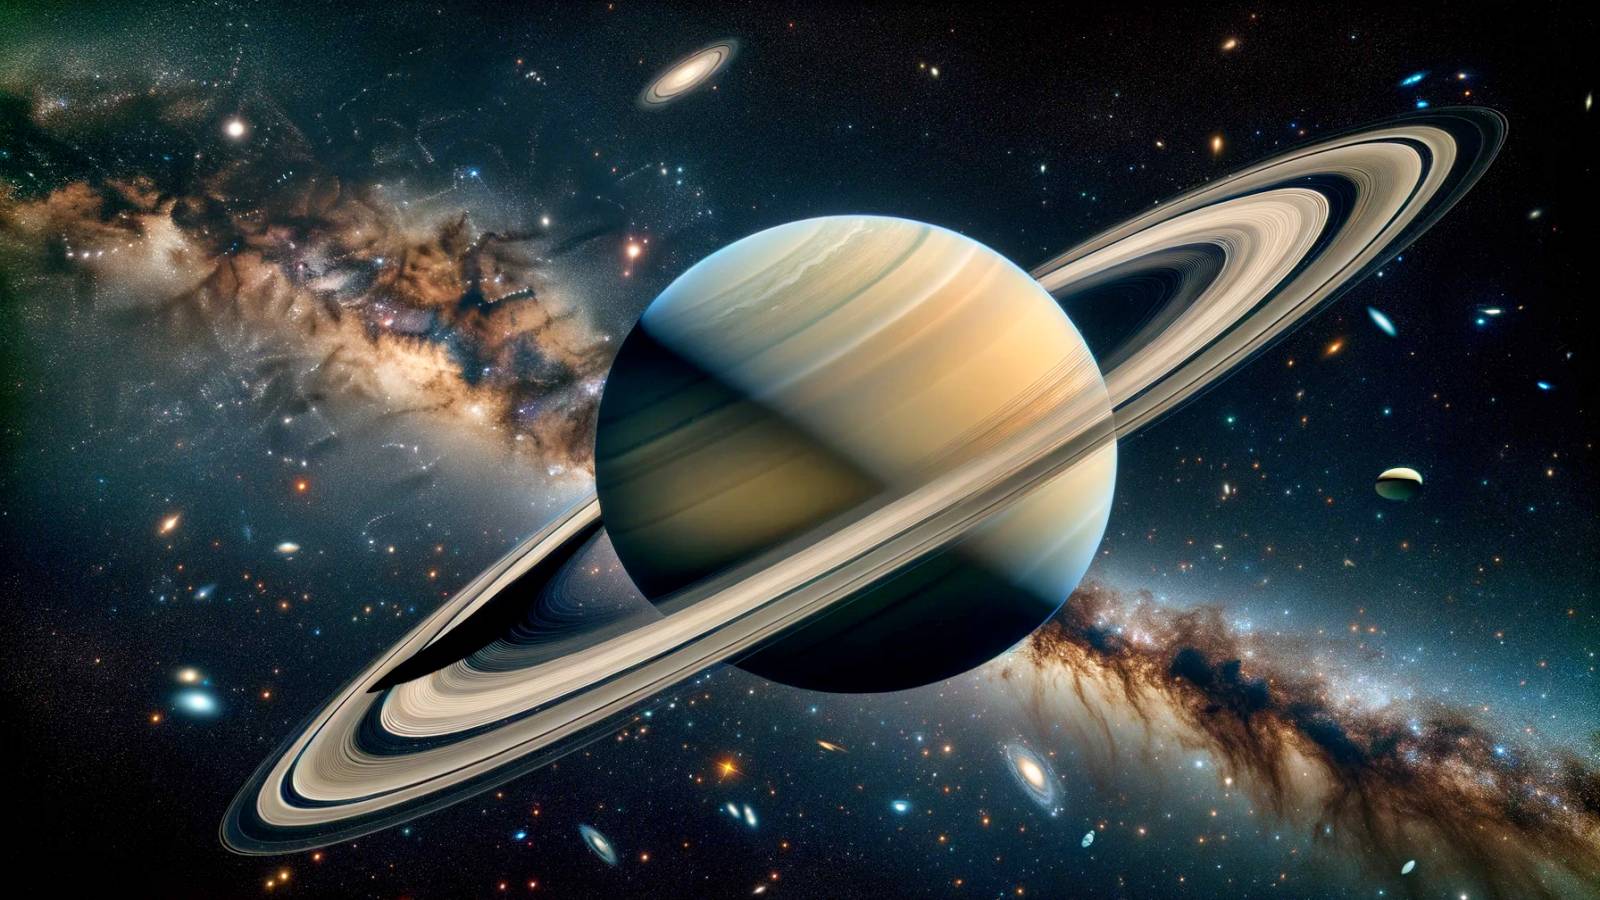 Gli anelli del pianeta Saturno scompaiono nel 2025, scoperti dai ricercatori della NASA